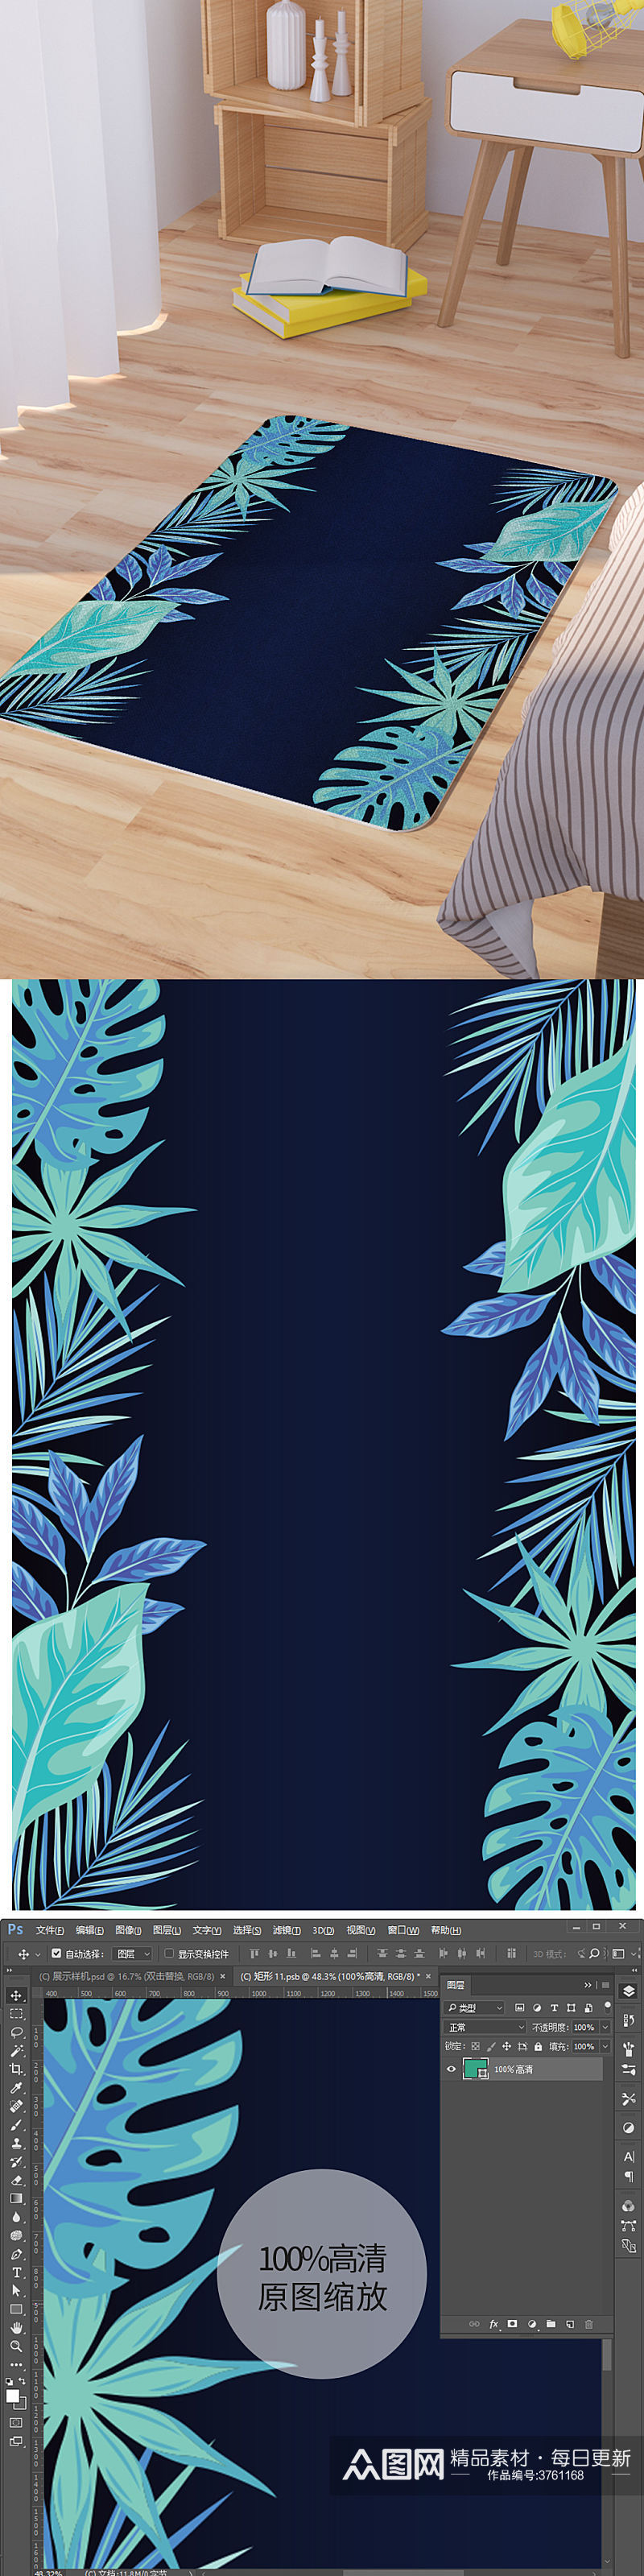 矢量手绘热带植物树叶脚垫地毯图案素材